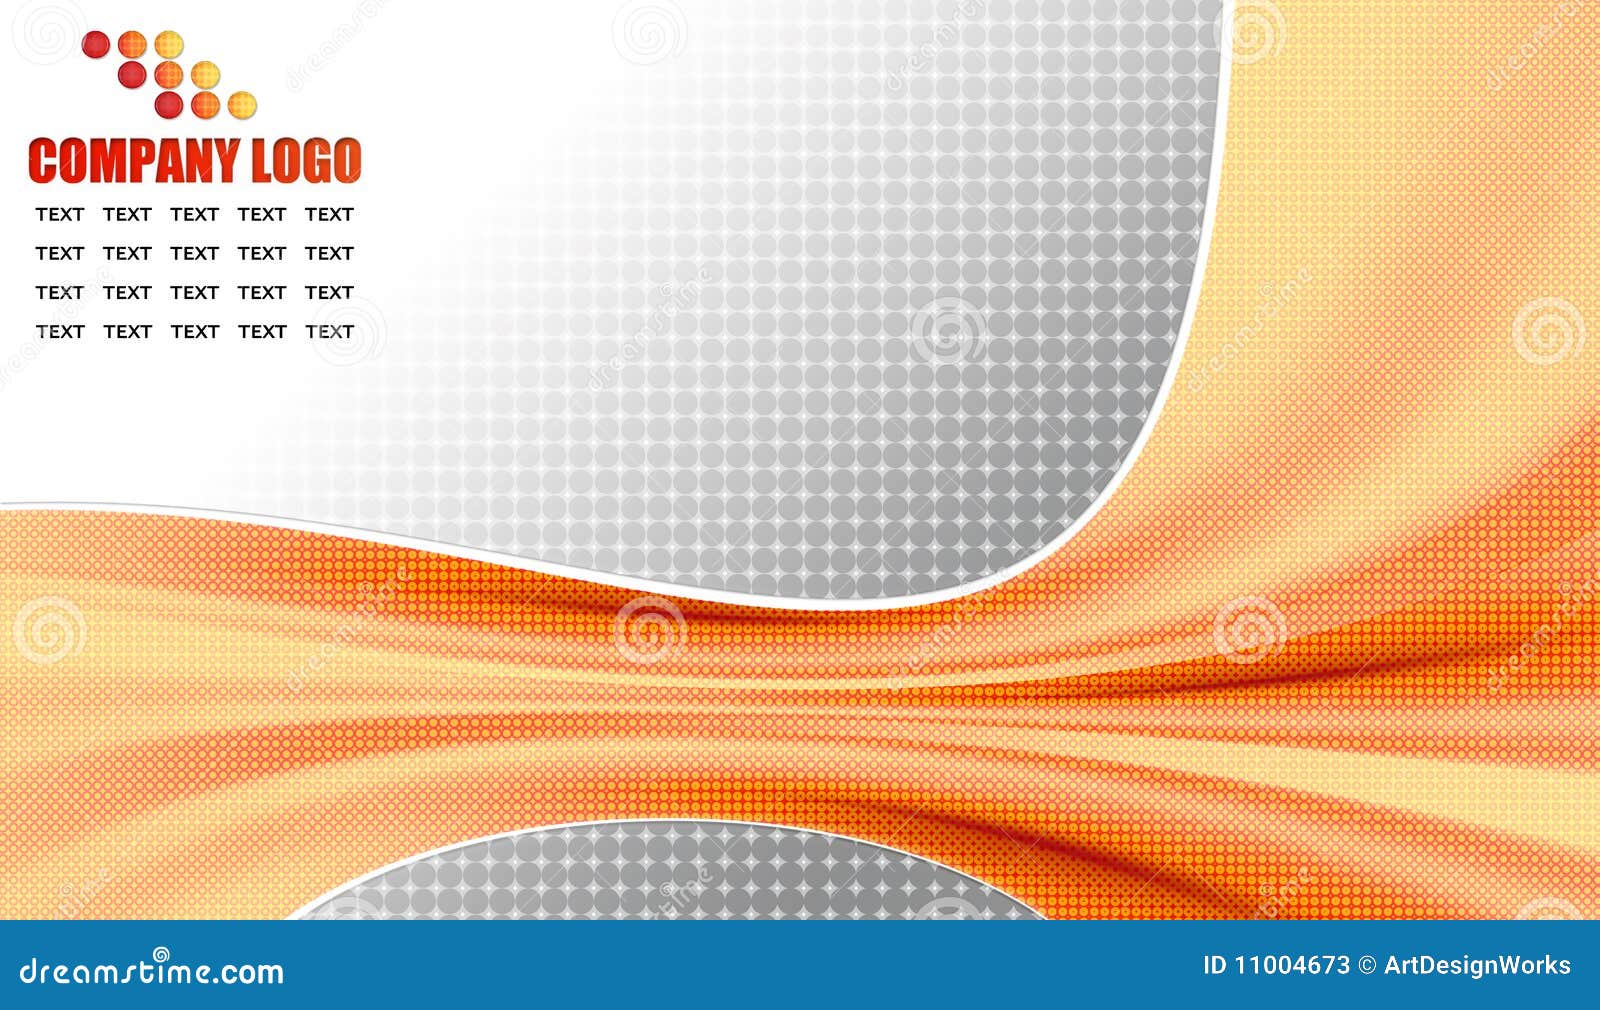 Unternehmenssymbole - Halbtonbild. Beste Auslegung von 2010 für neue Technologiefirma-, moderne und kreativeauslegung im Halbtonglaseffekt